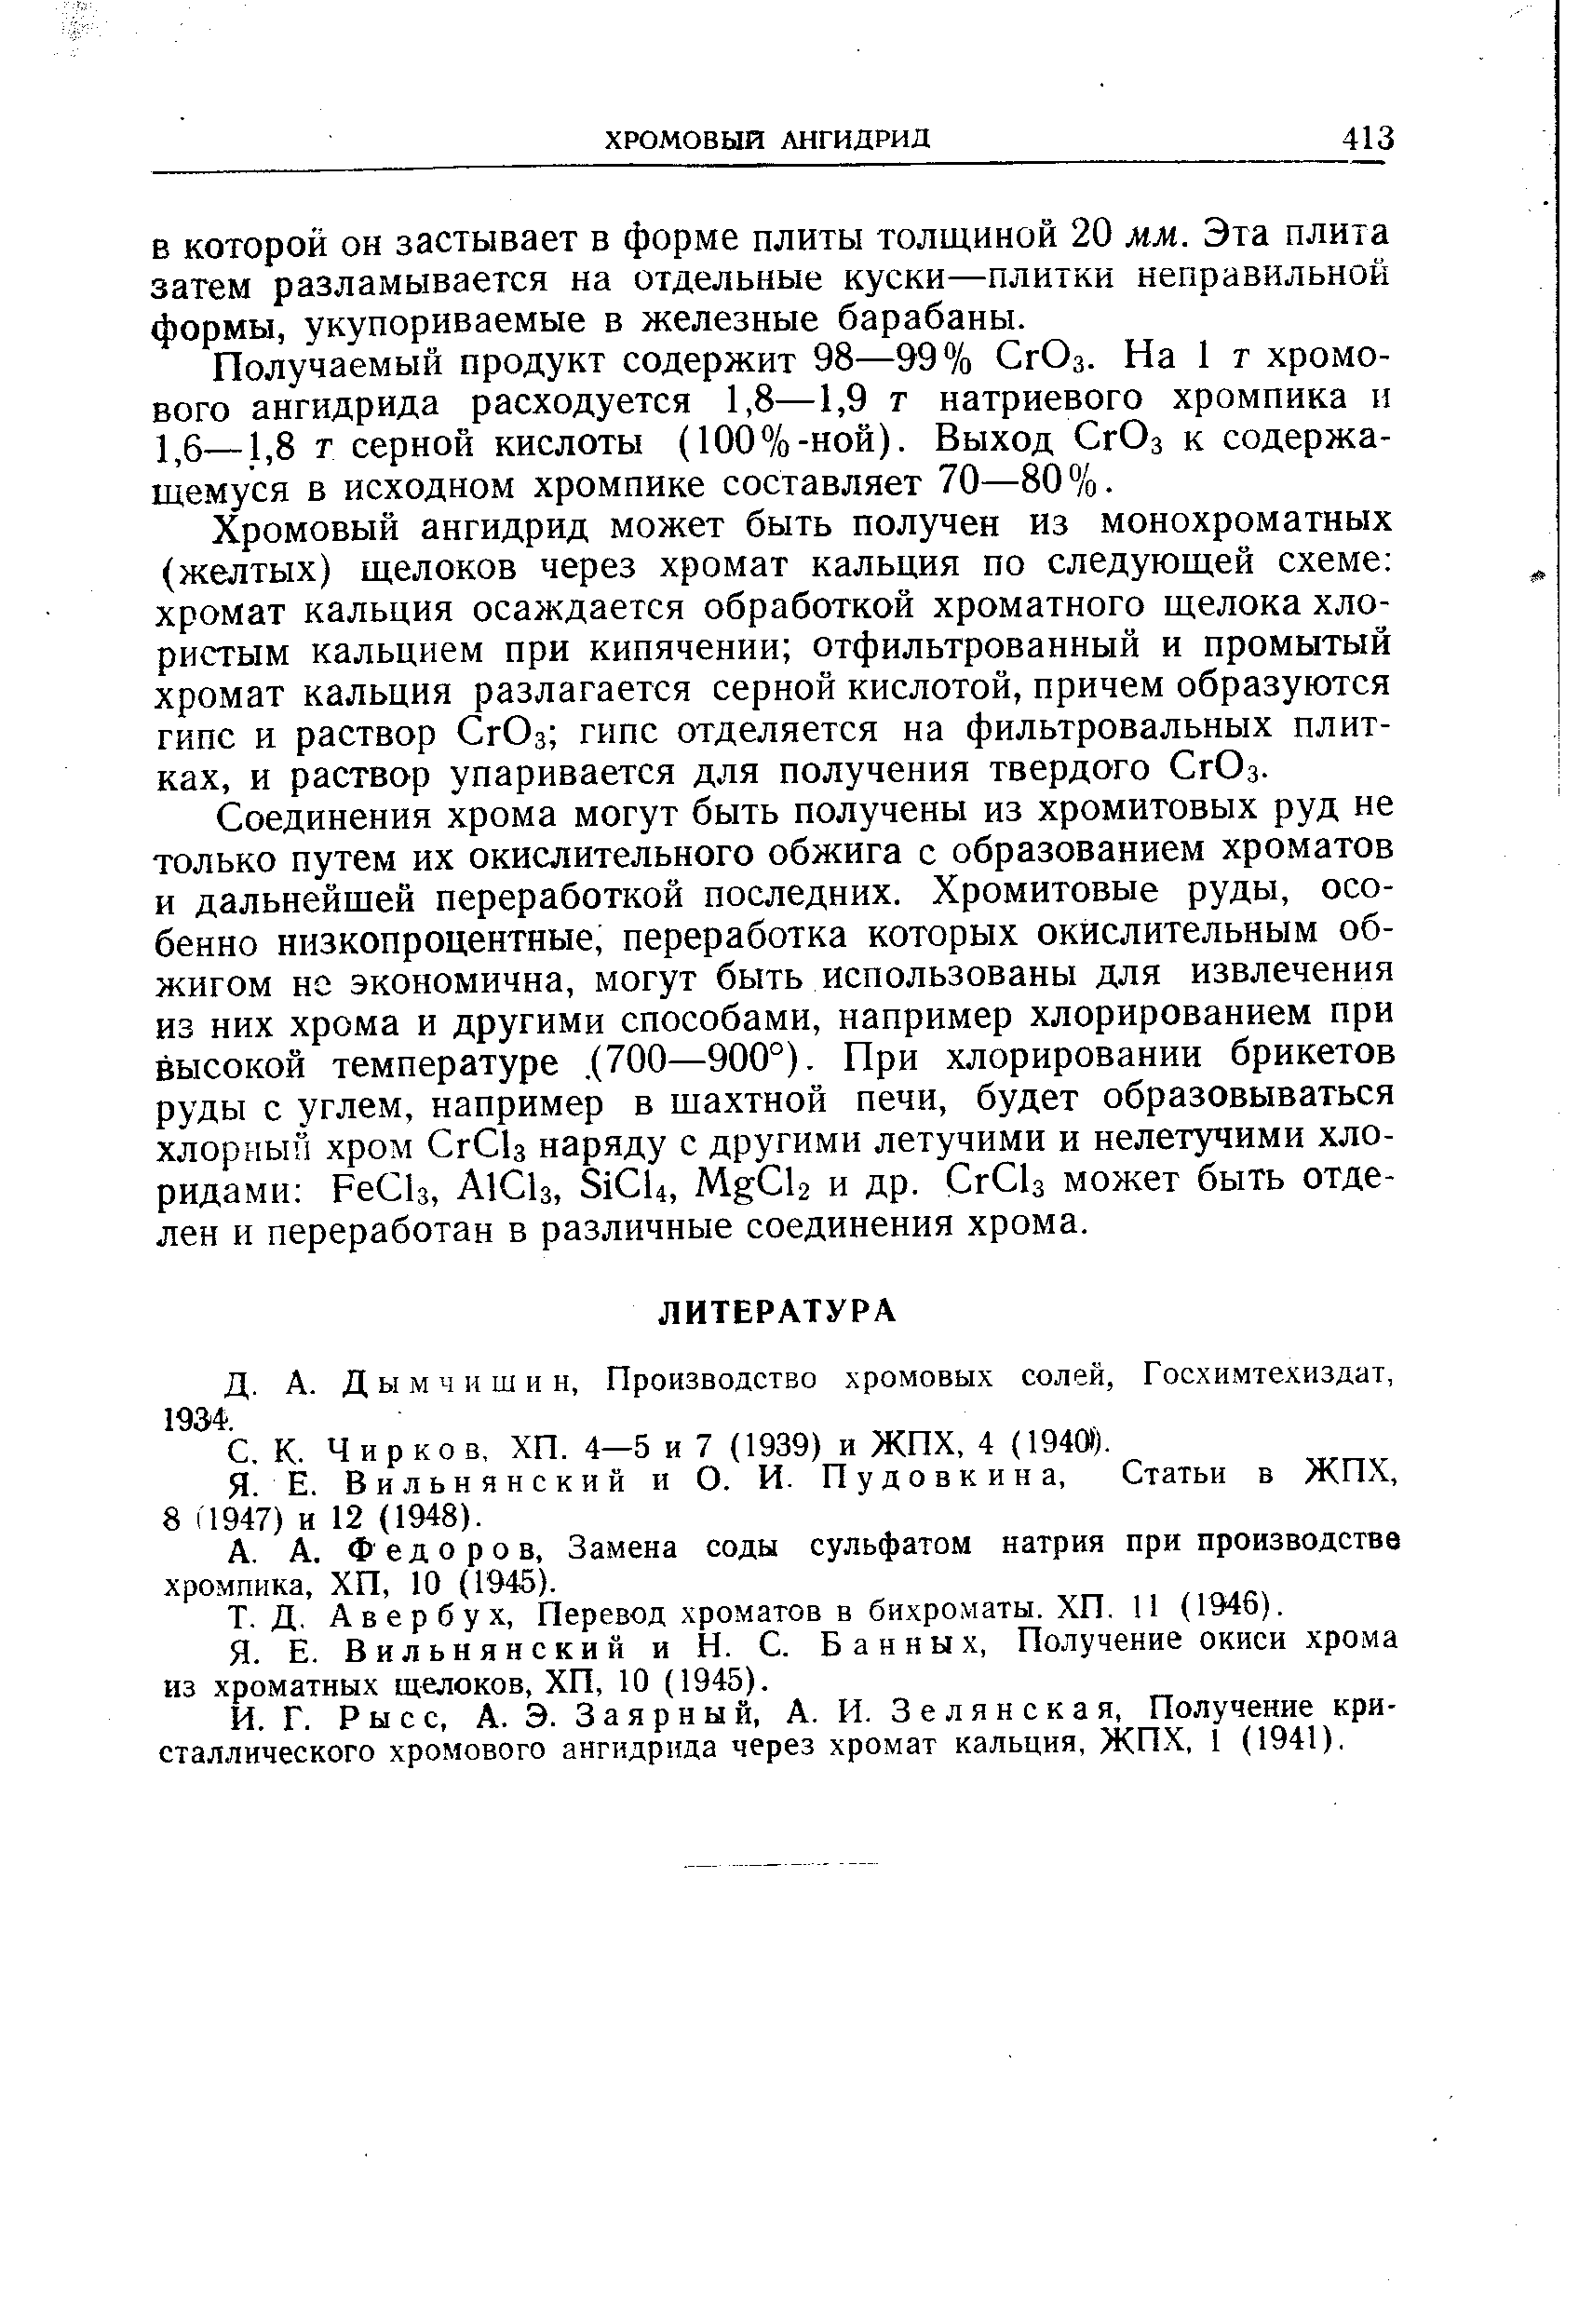 Федоров, Замена соды сульфатом натрия при производстве хромпика, ХП, 10 (1945).